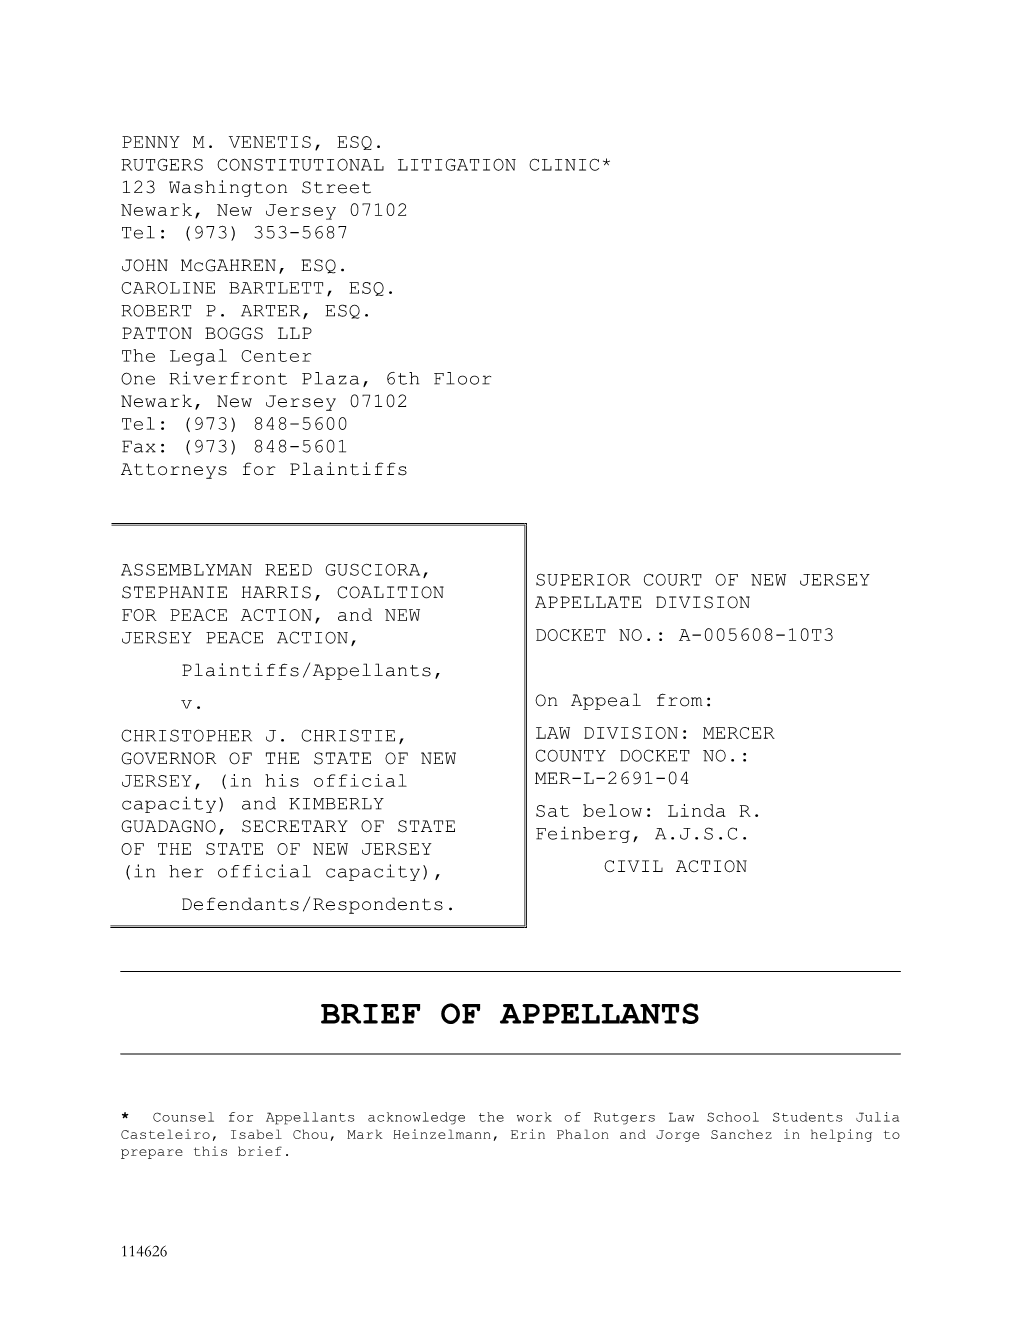 Appellants' Brief